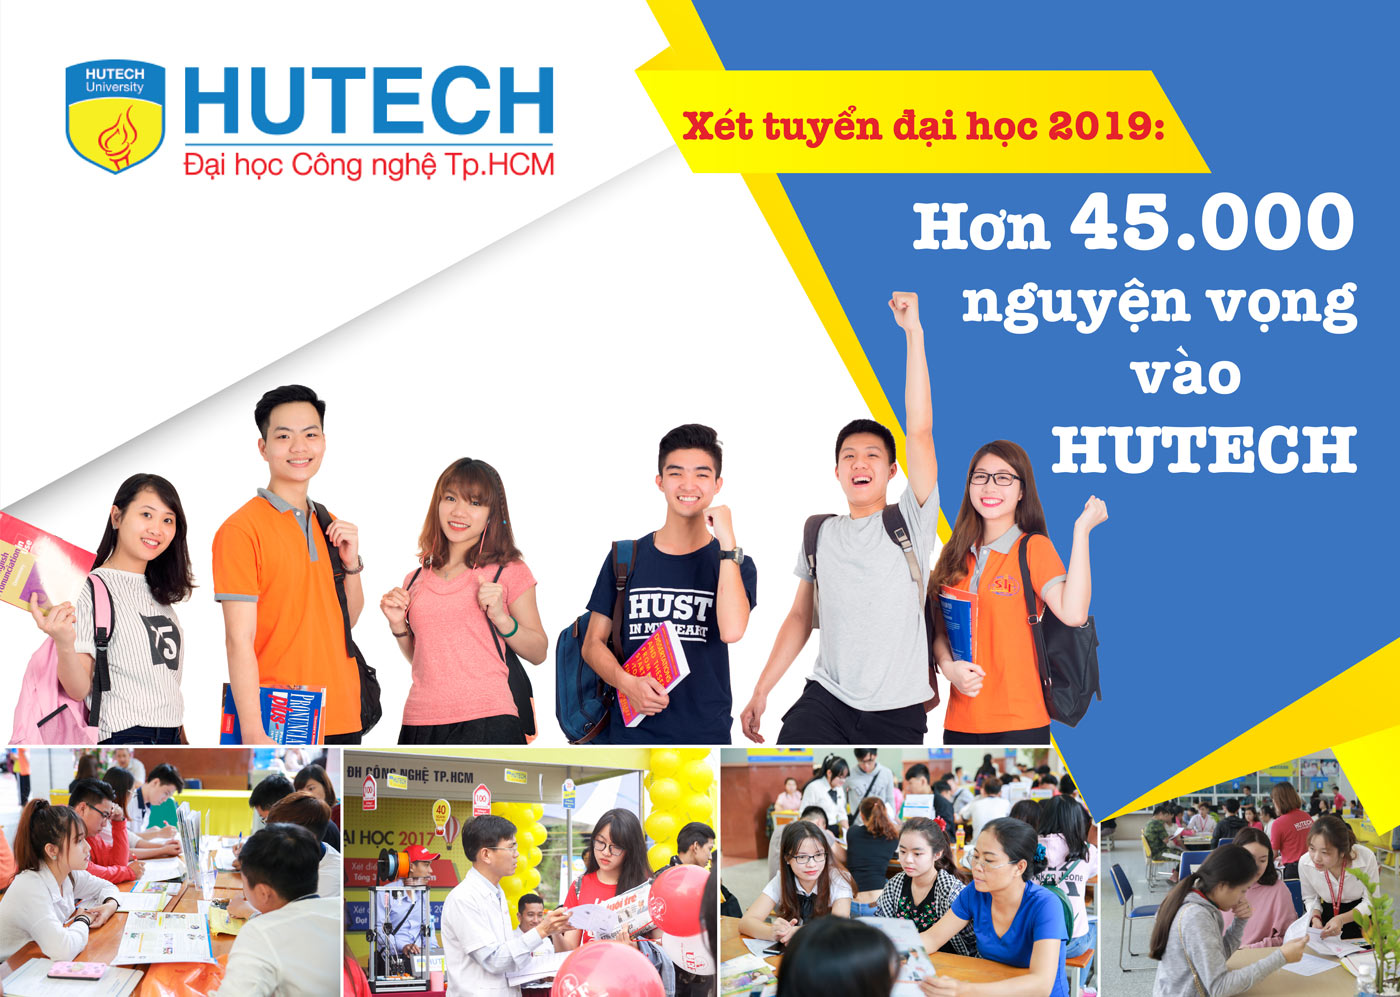 Xét tuyển đại học 2019 - hơn 45.000 nguyện vọng vào HUTECH - Ảnh 1